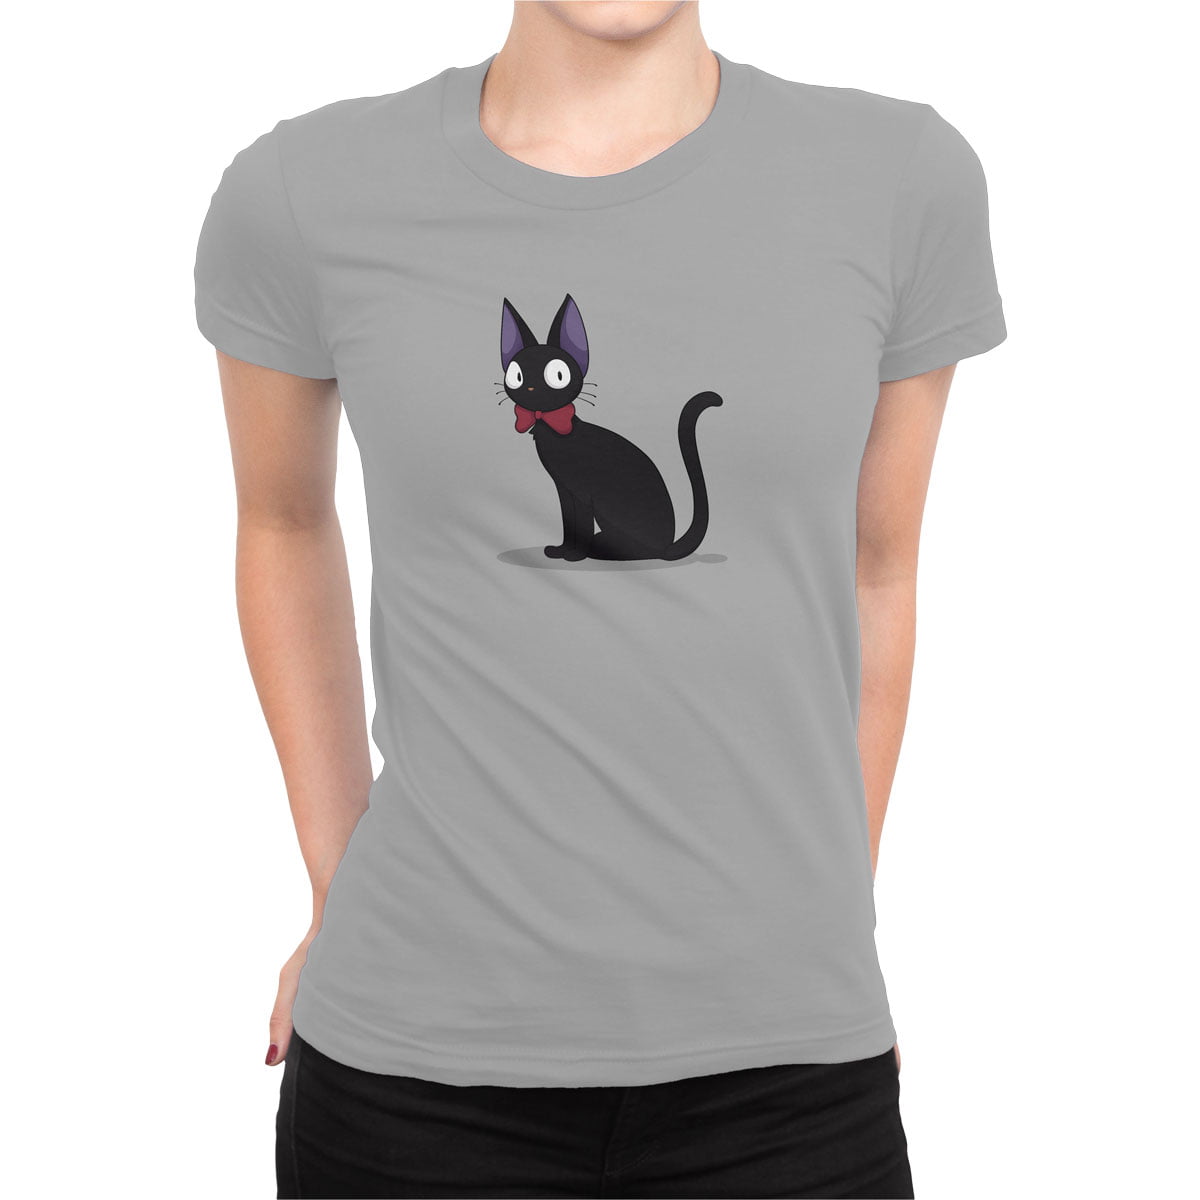 Kucuk cadi kiki jiji tisort kadin g - küçük cadı kiki kedi jiji baskılı kadın t-shirt - figurex